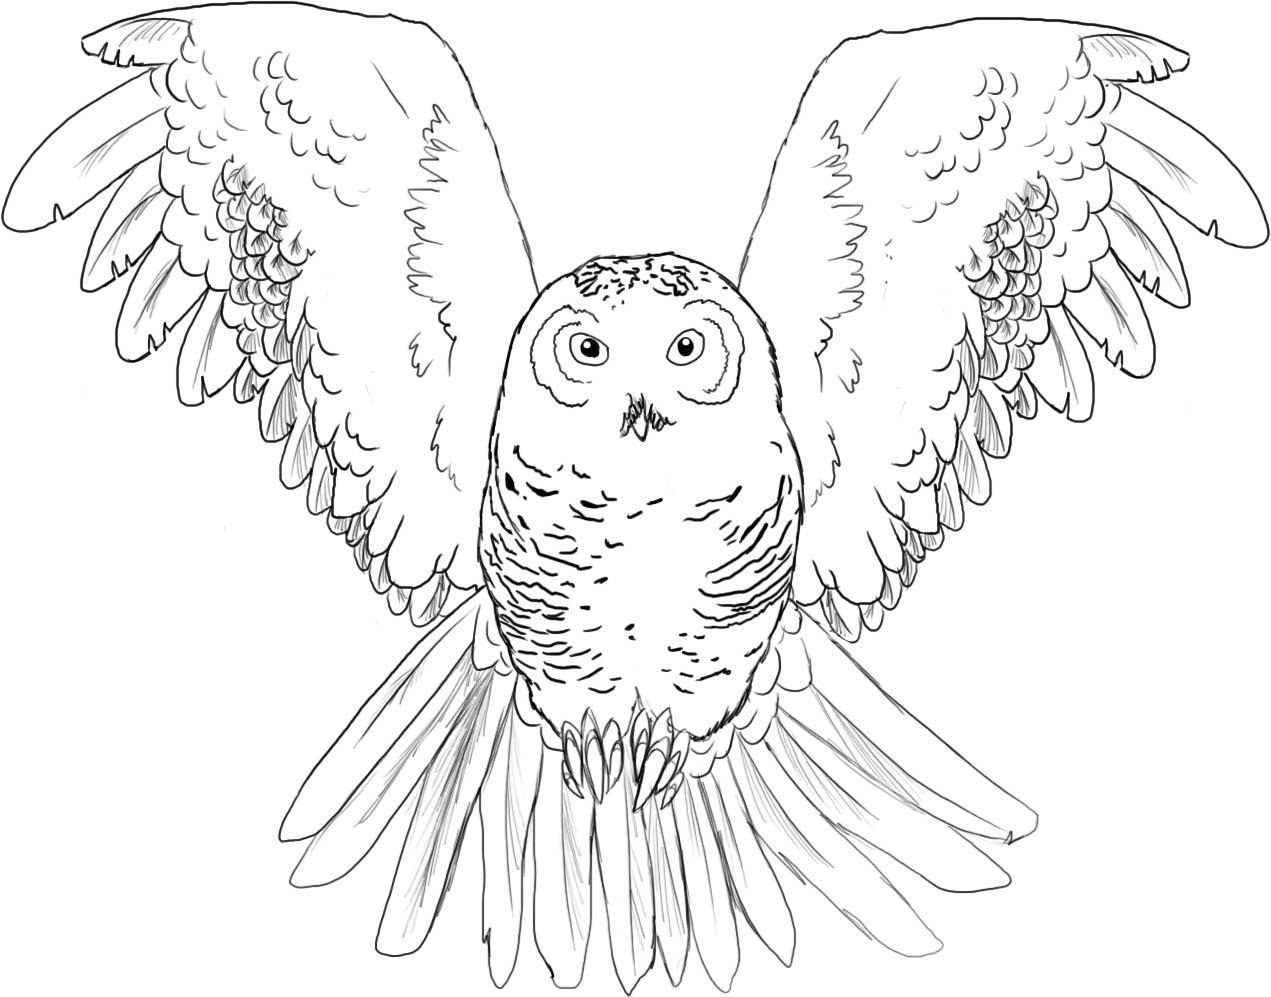 Printable Owls